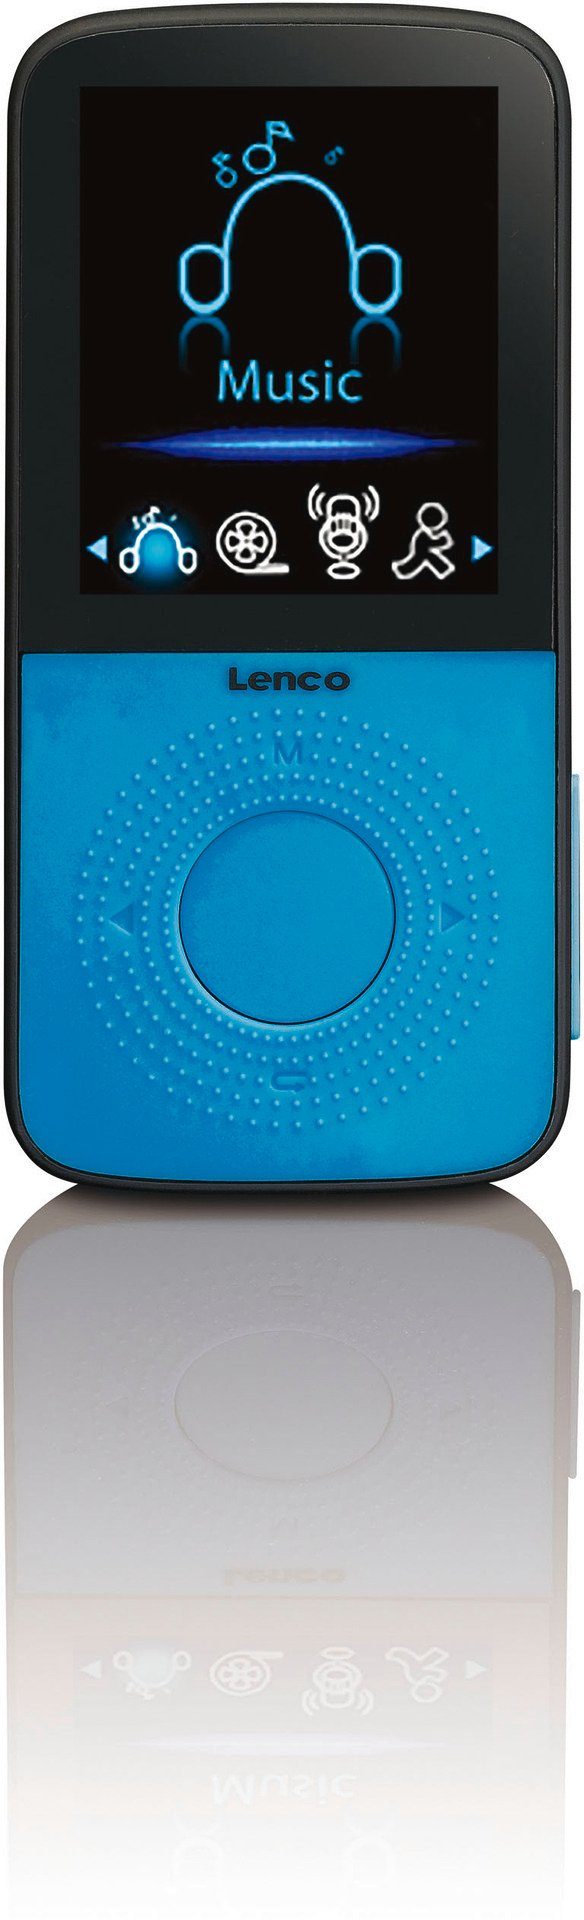 Lenco PODO-153 MP3 Player mit Schrittzähler GB) integriertem MP3-Player Schwarz/Blau (4